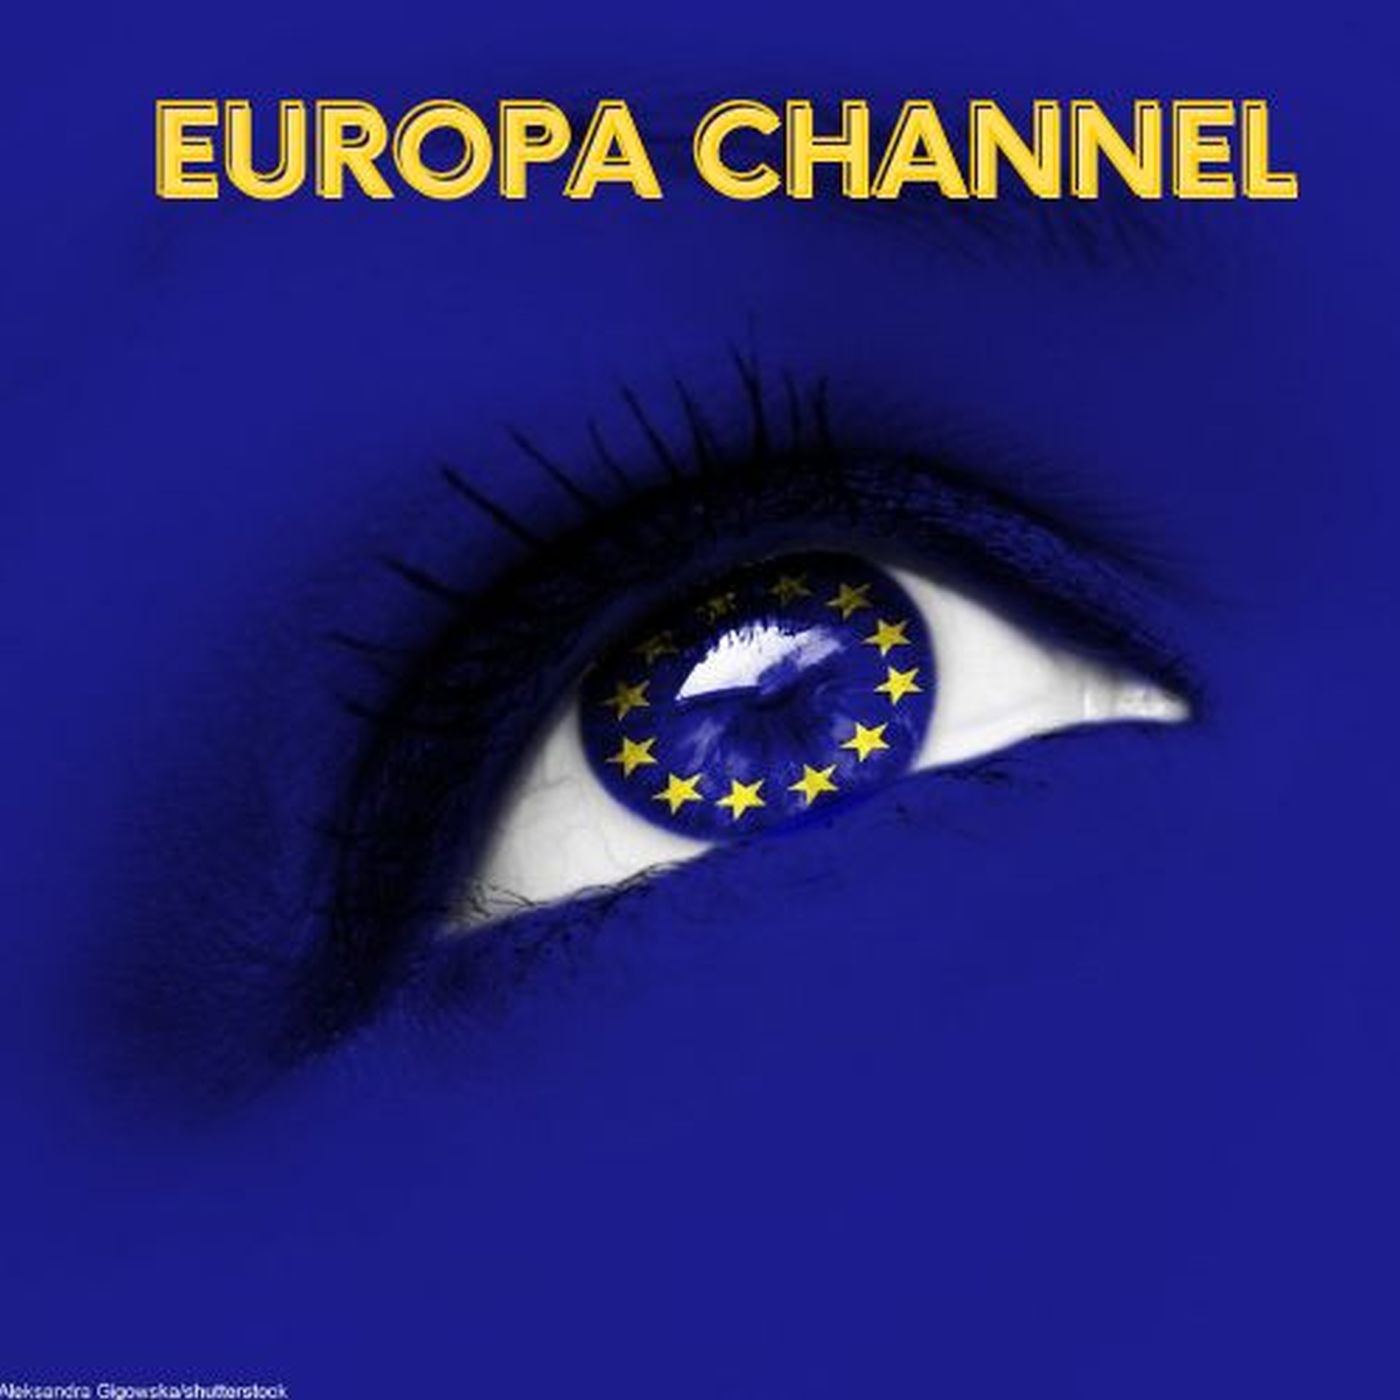 Europa Channel